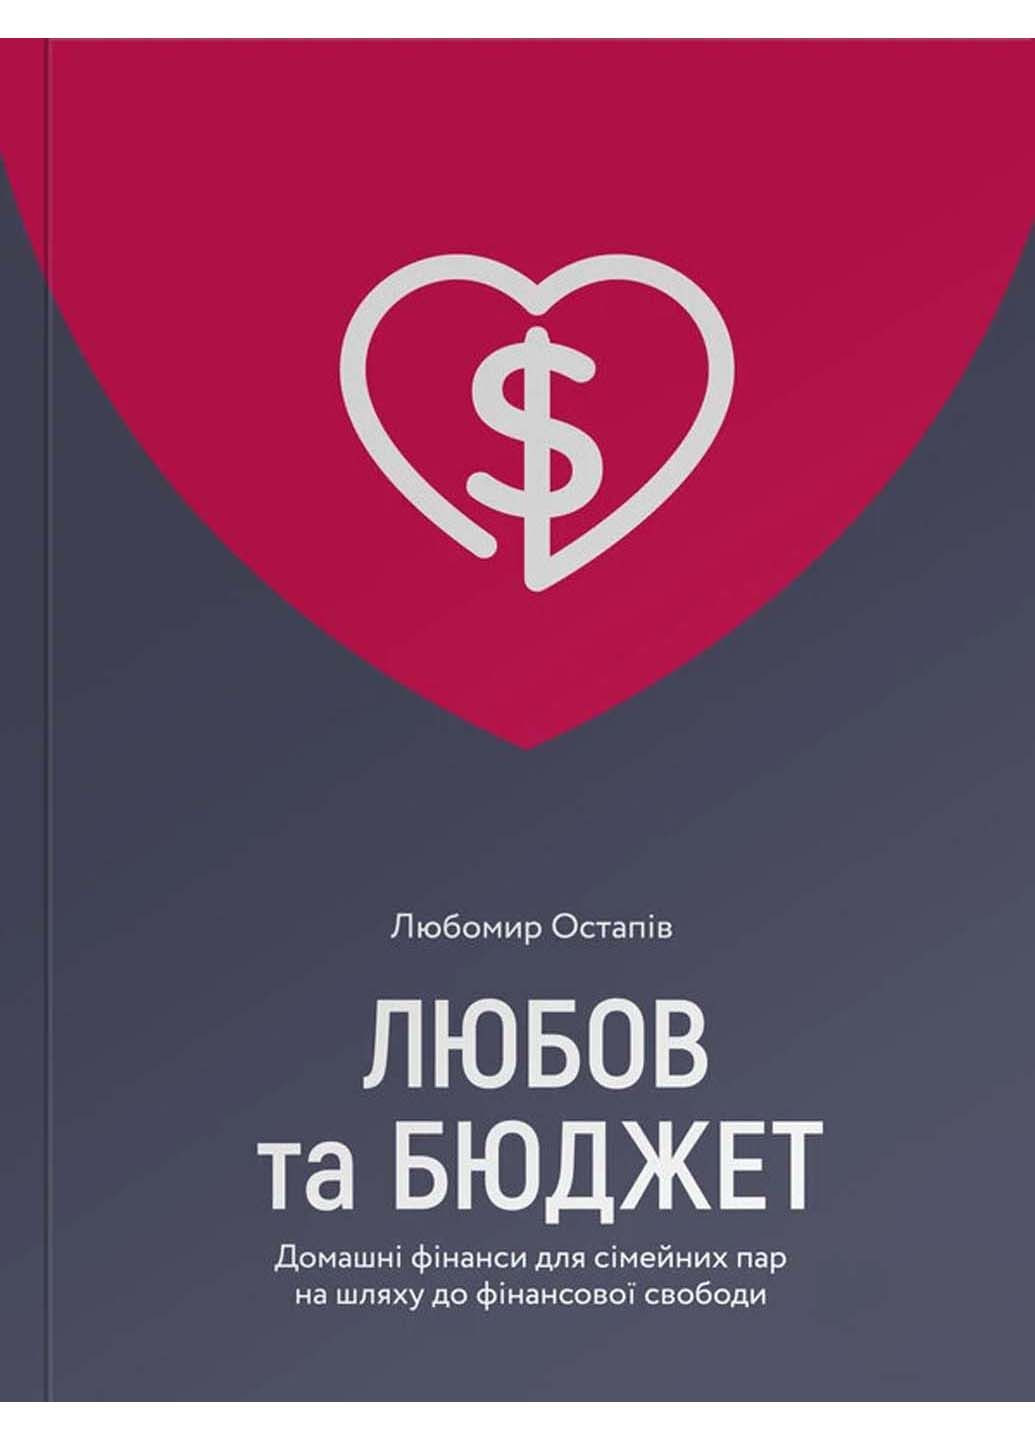 Книга Любовь и бюджет. Домашние финансы для семейных пар на пути к финансовой свободе Любомир Остапов 2020г 288 с Yakaboo Publishing (293060442)